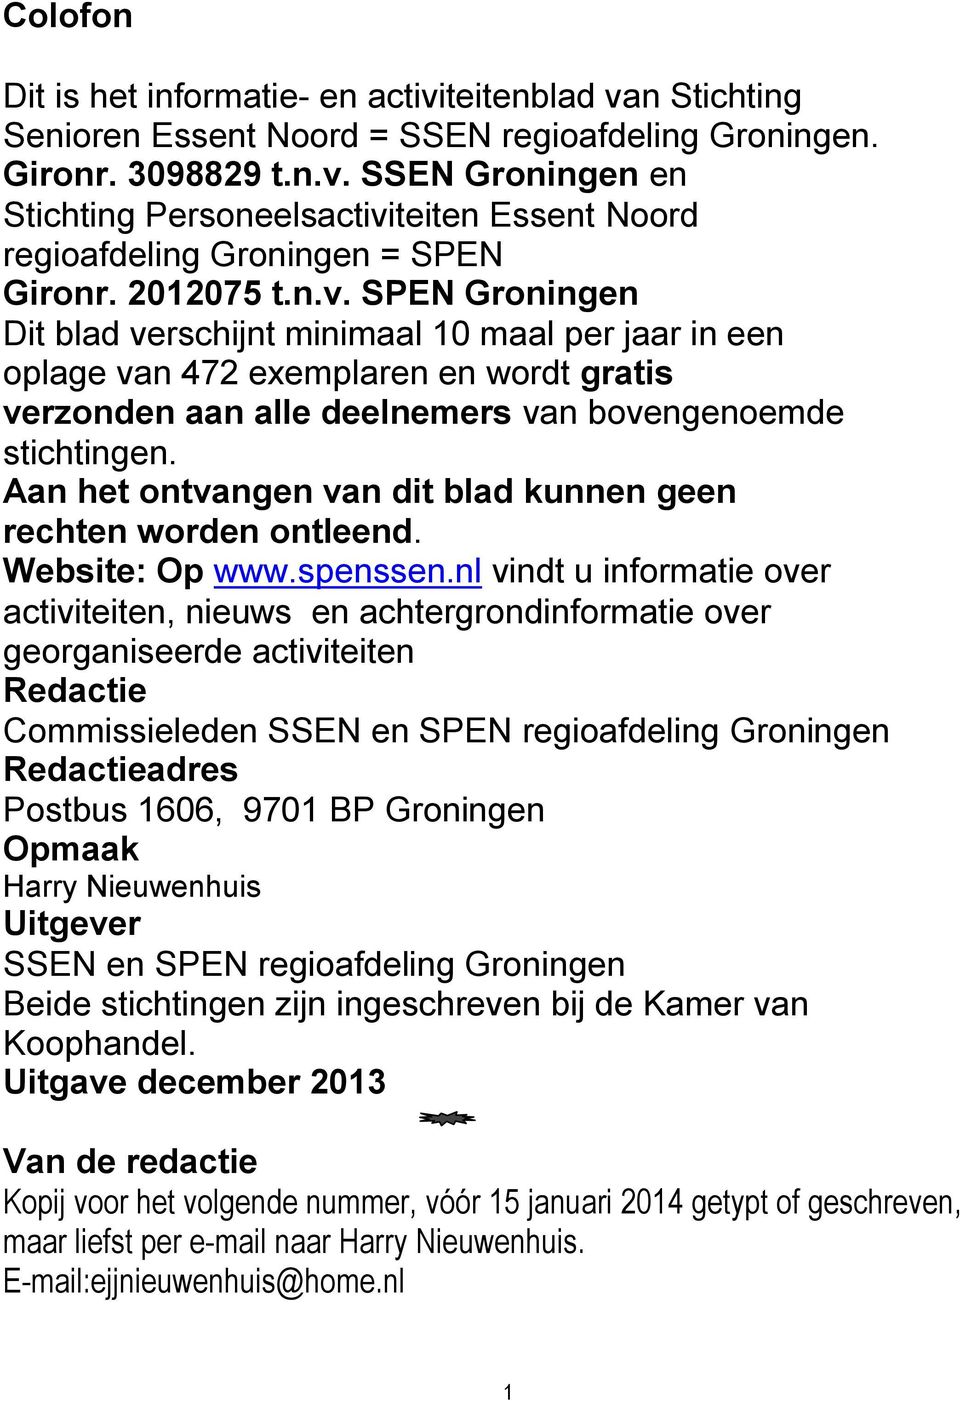 Aan het ontvangen van dit blad kunnen geen rechten worden ontleend. Website: Op www.spenssen.